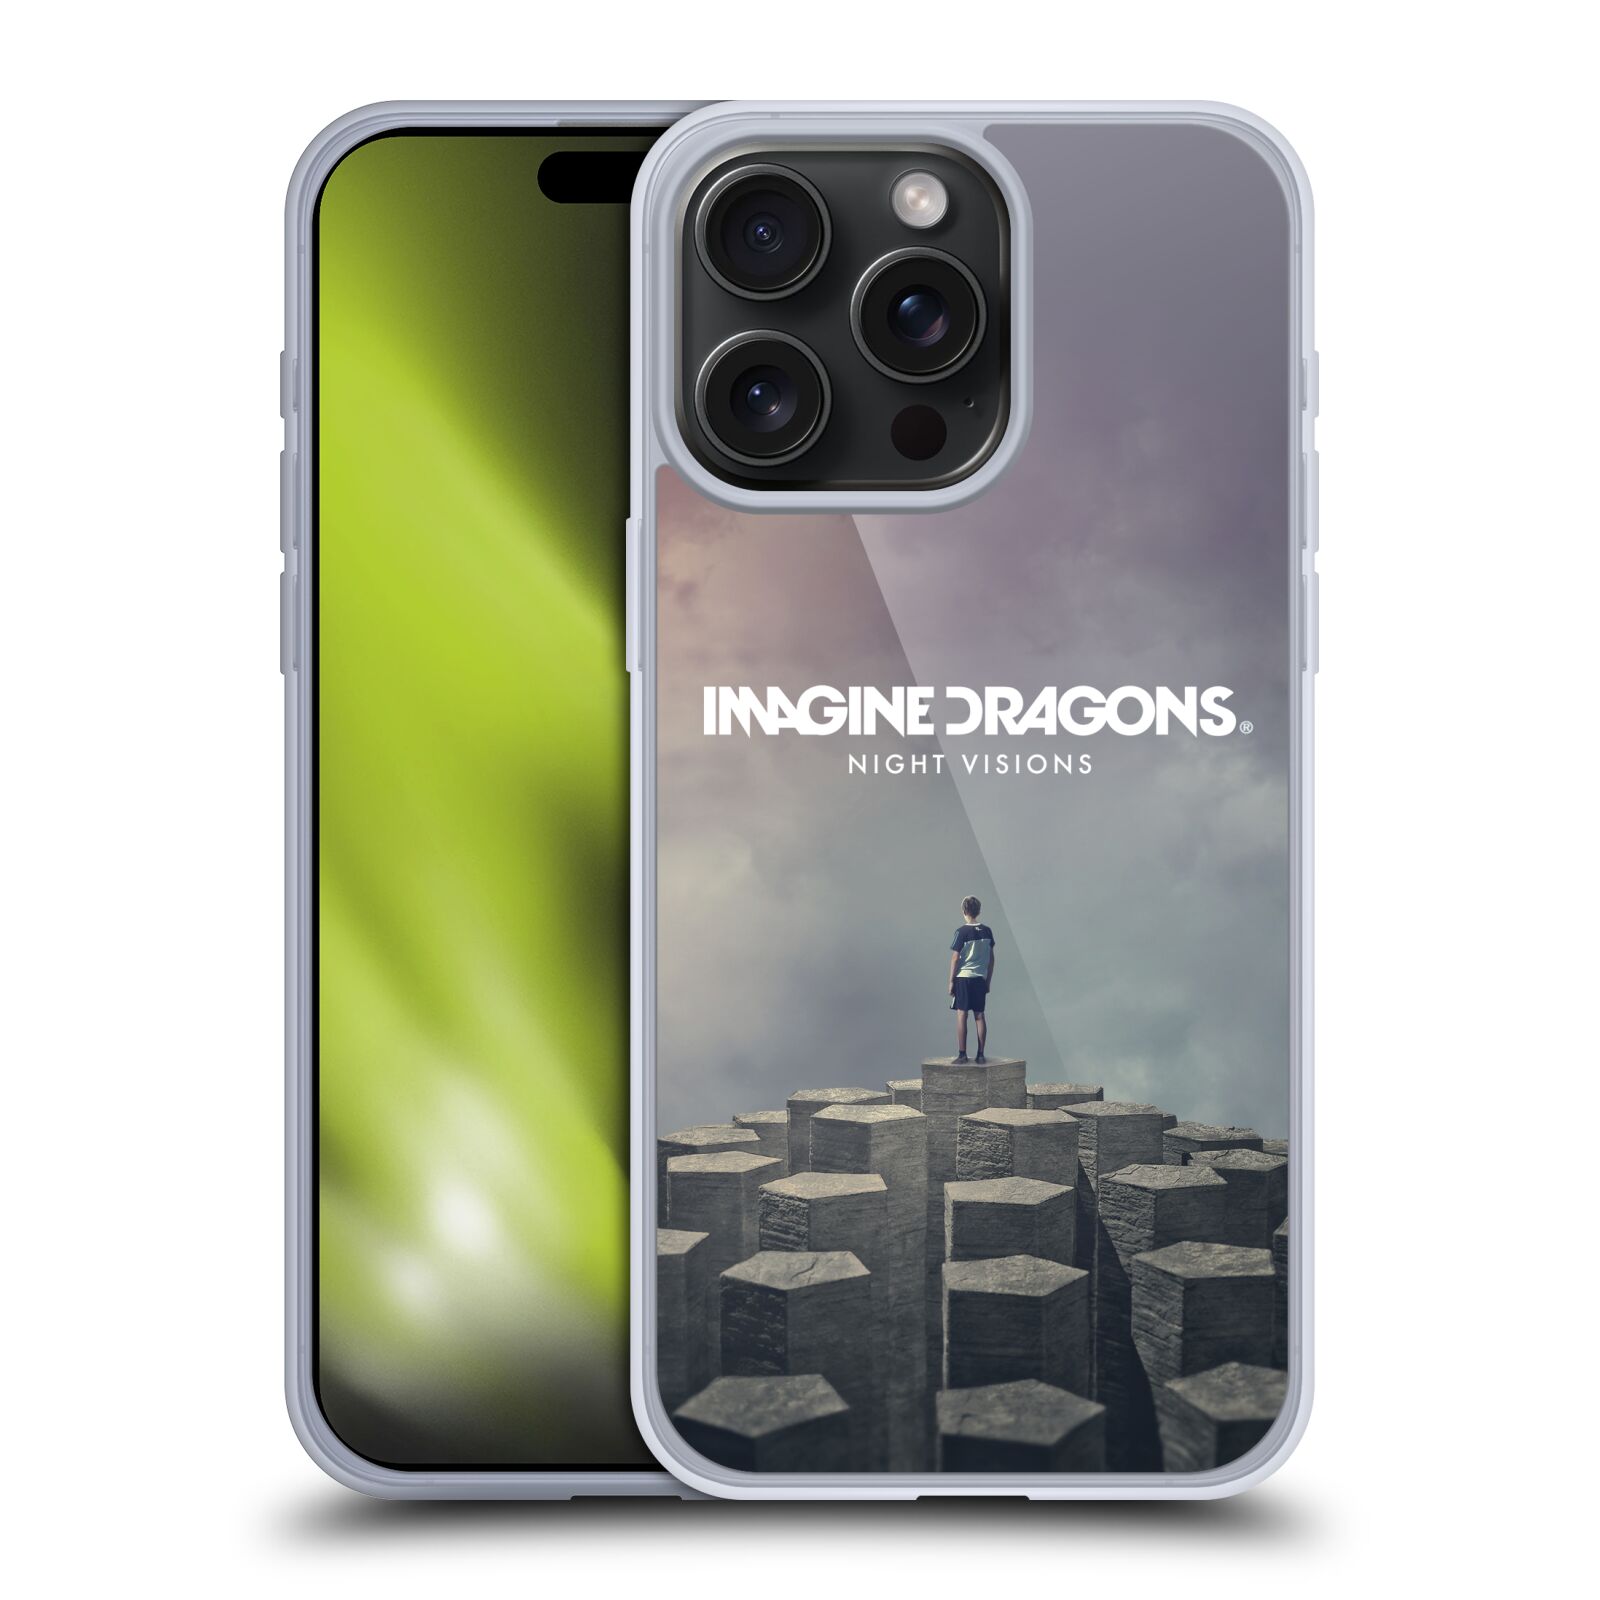 Silikonové lesklé pouzdro na mobil Apple iPhone 15 Pro Max - Imagine Dragons - Night Visions (Silikonový lesklý kryt, obal, pouzdro na mobilní telefon Apple iPhone 15 Pro Max s licencovaným motivem Imagine Dragons - Night Visions)